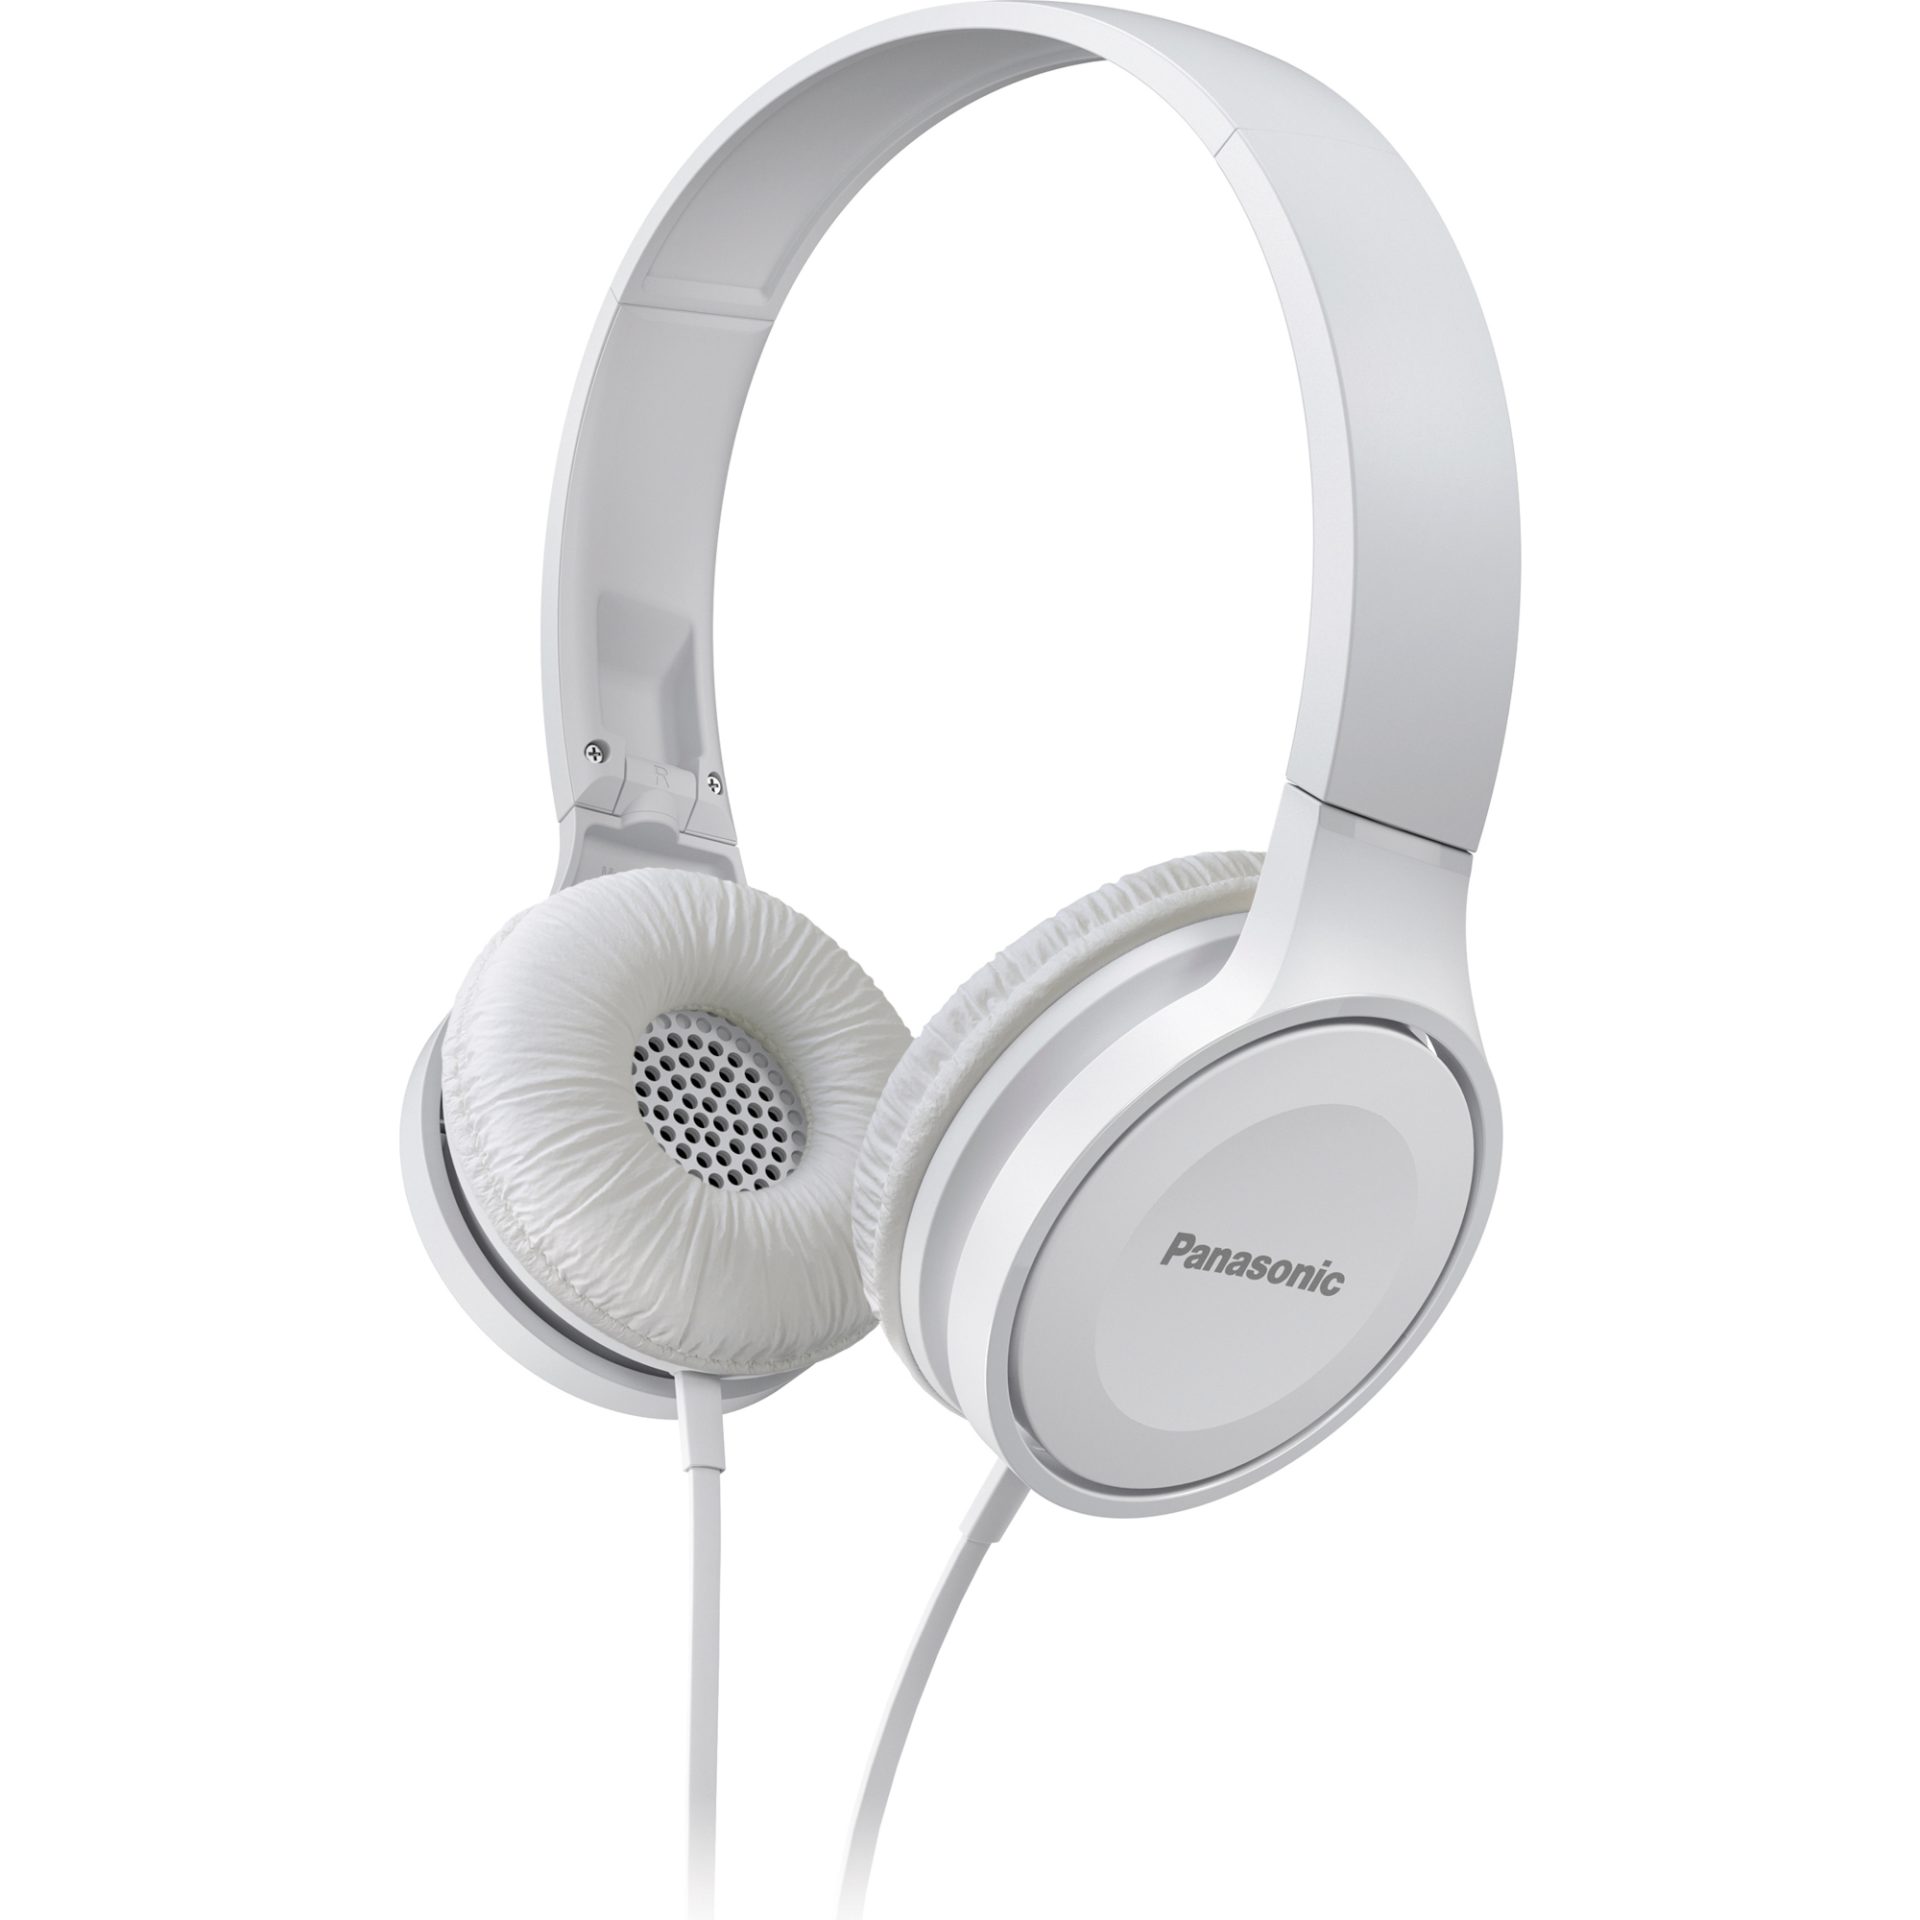 Panasonic RP-HF100 stylová sluchátka přes uši propojená s mikrofonem (30mm neodymový magnetický měnič, sklopný dovnitř, pohodlný), bílá